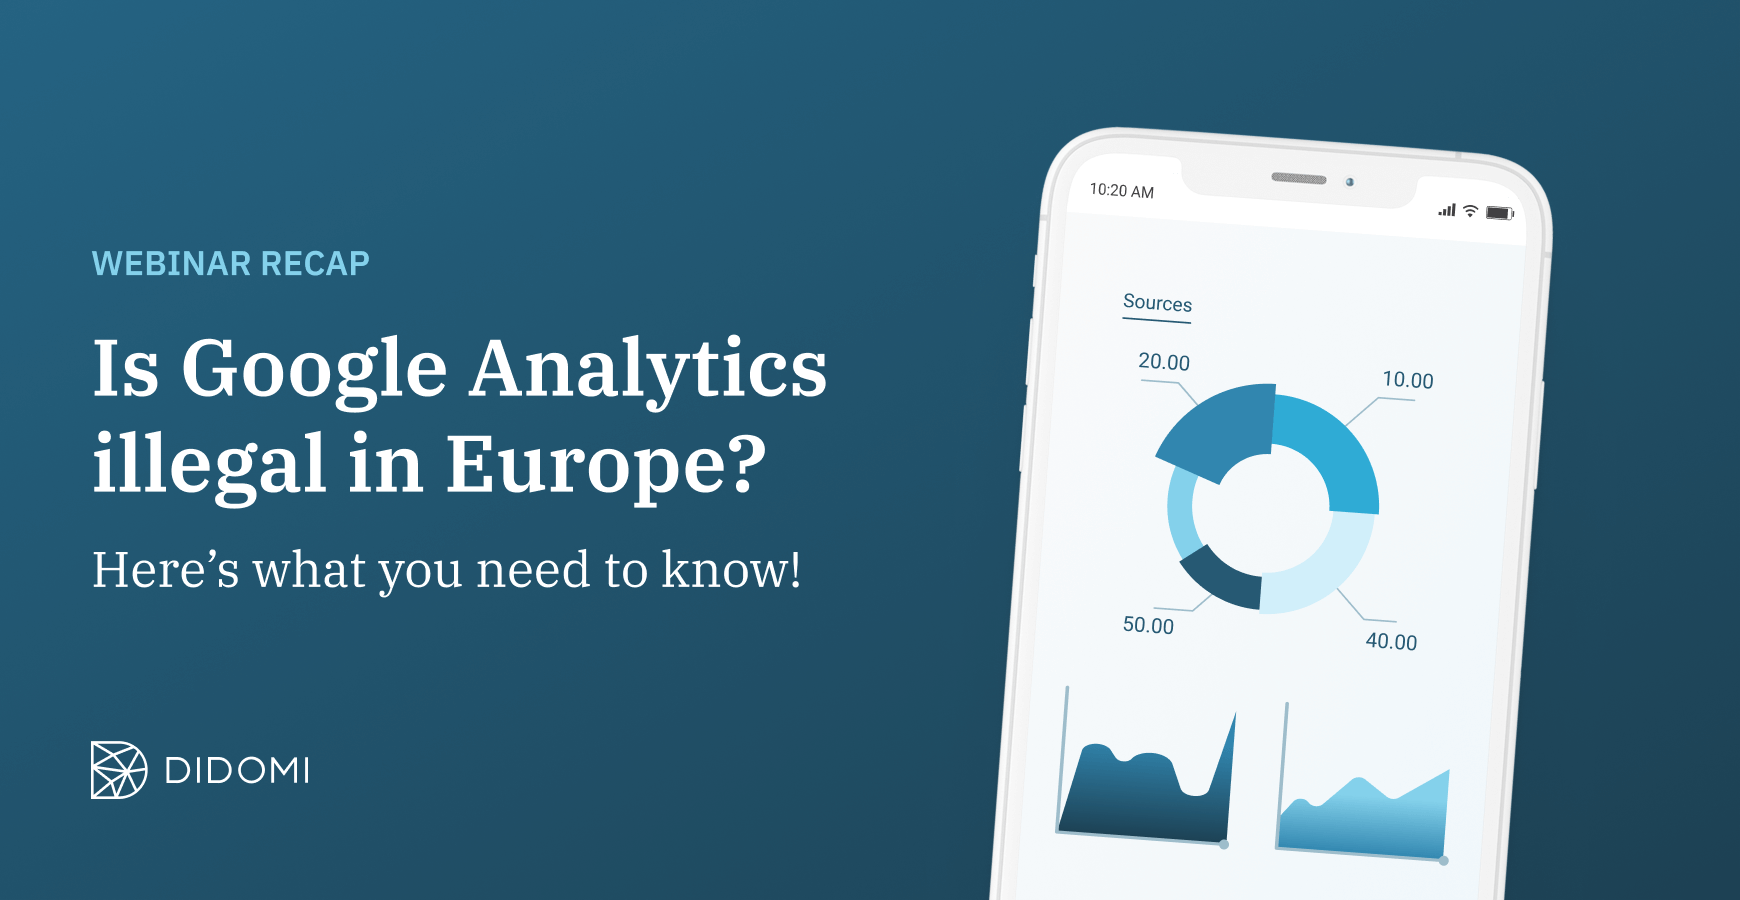 google analytics europe